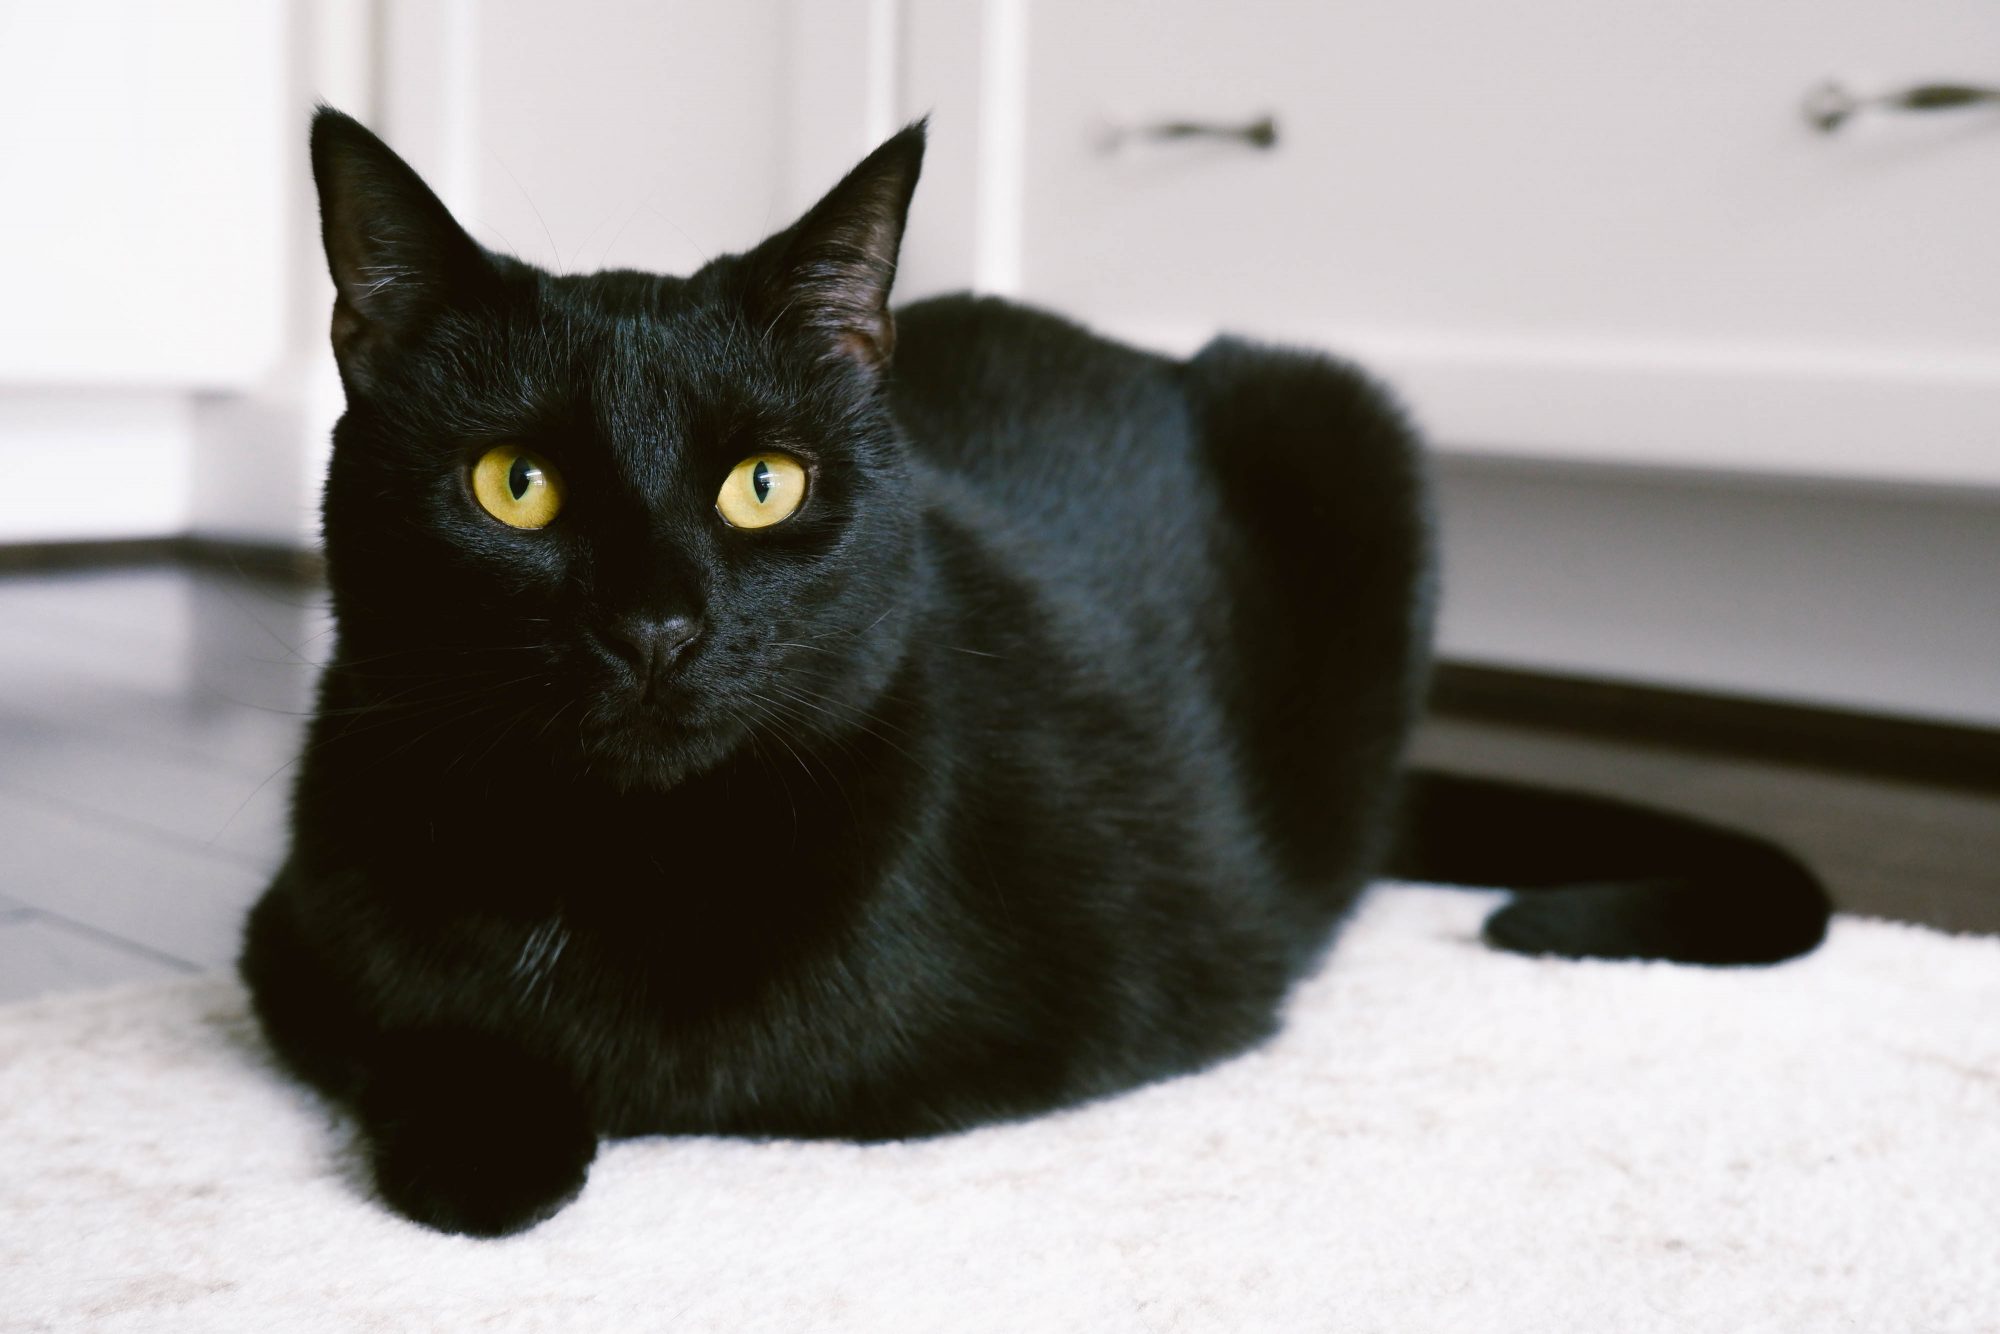 Mèo đen biểu tượng luôn là một chủ đề hot và được yêu thích. Chỉ với một cái nhìn, bạn sẽ hiểu được lý do tại sao!